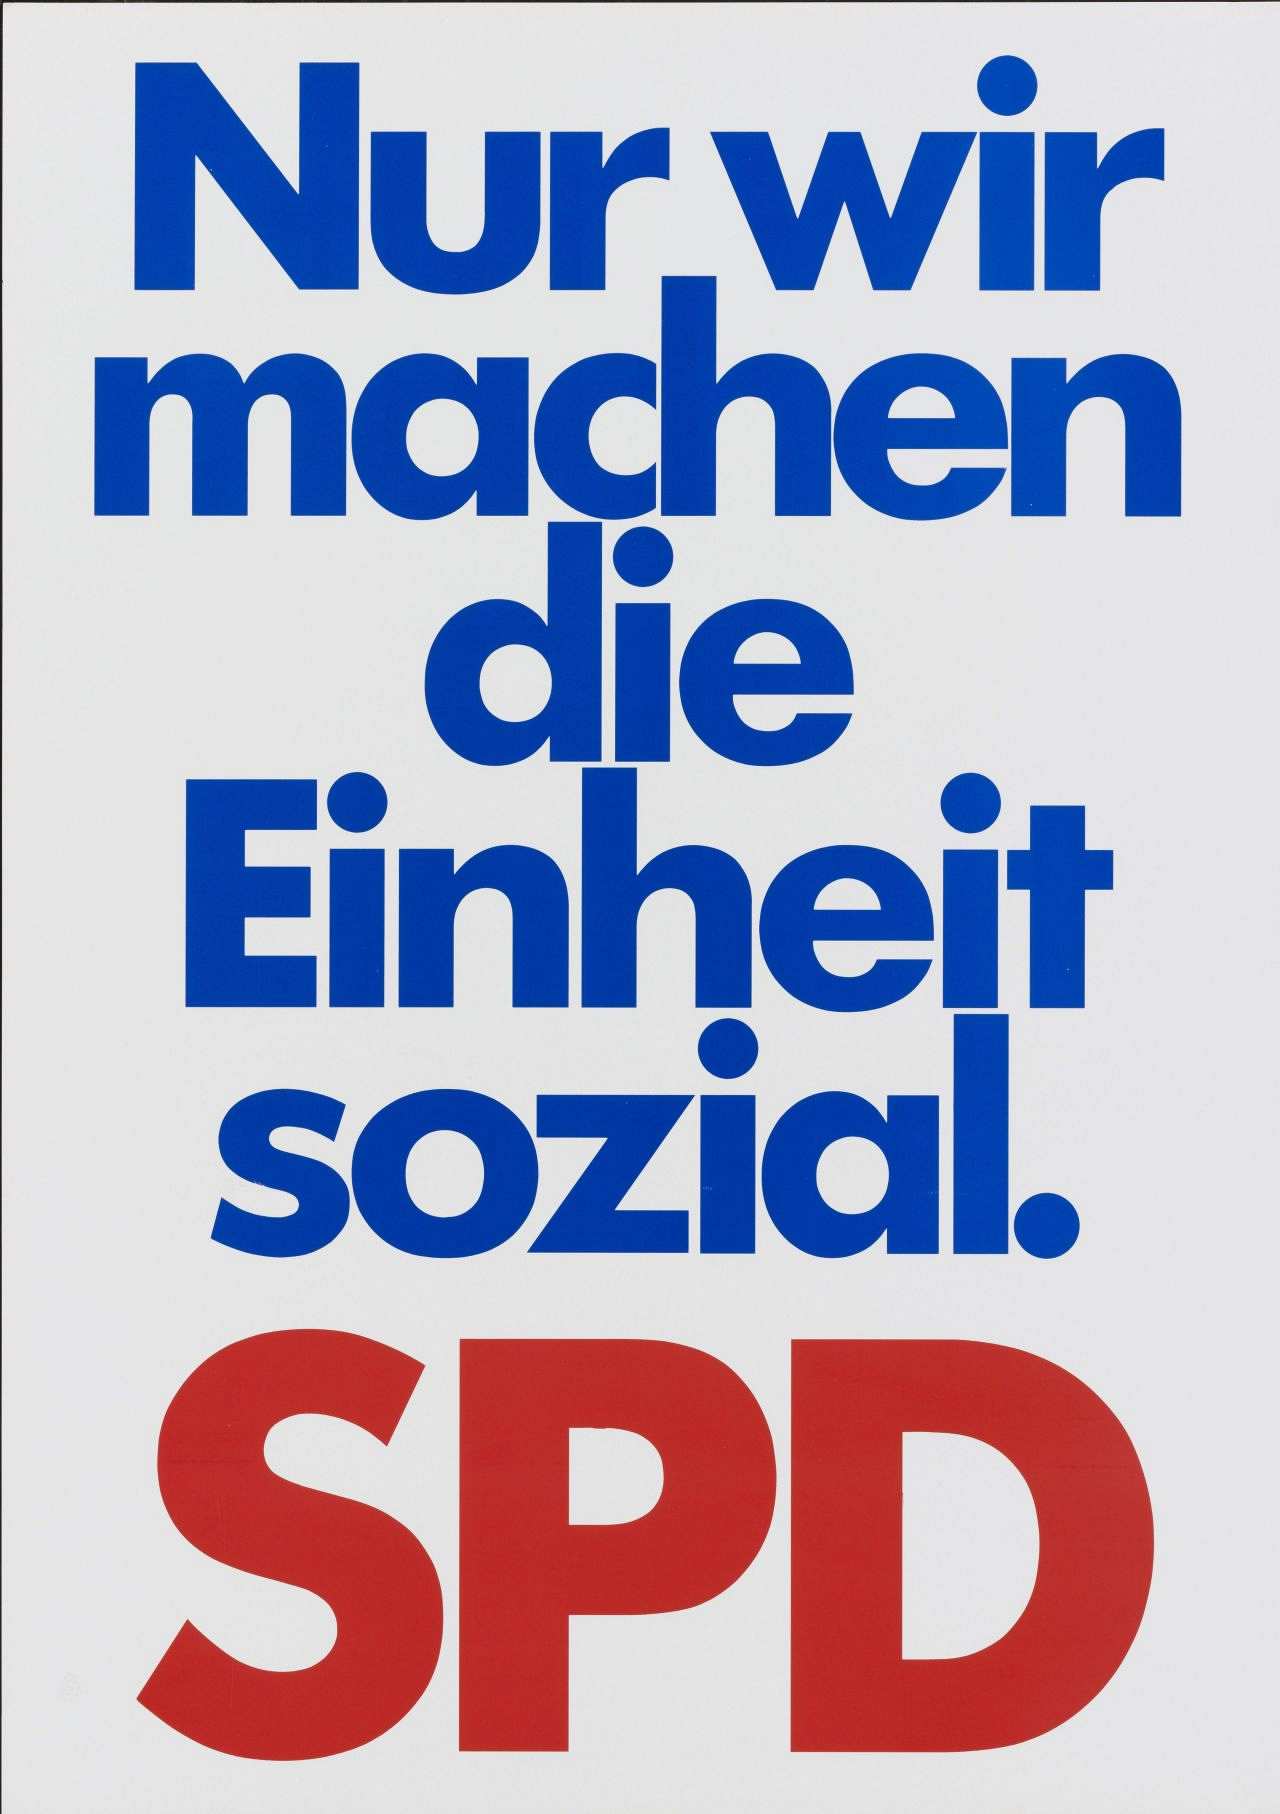 Plakat der SPD, farbiger Druck, weißer Hintergrund, blauer Text: Nur wir / machen / die / Einheit / sozial., unten roter Text: SPD.